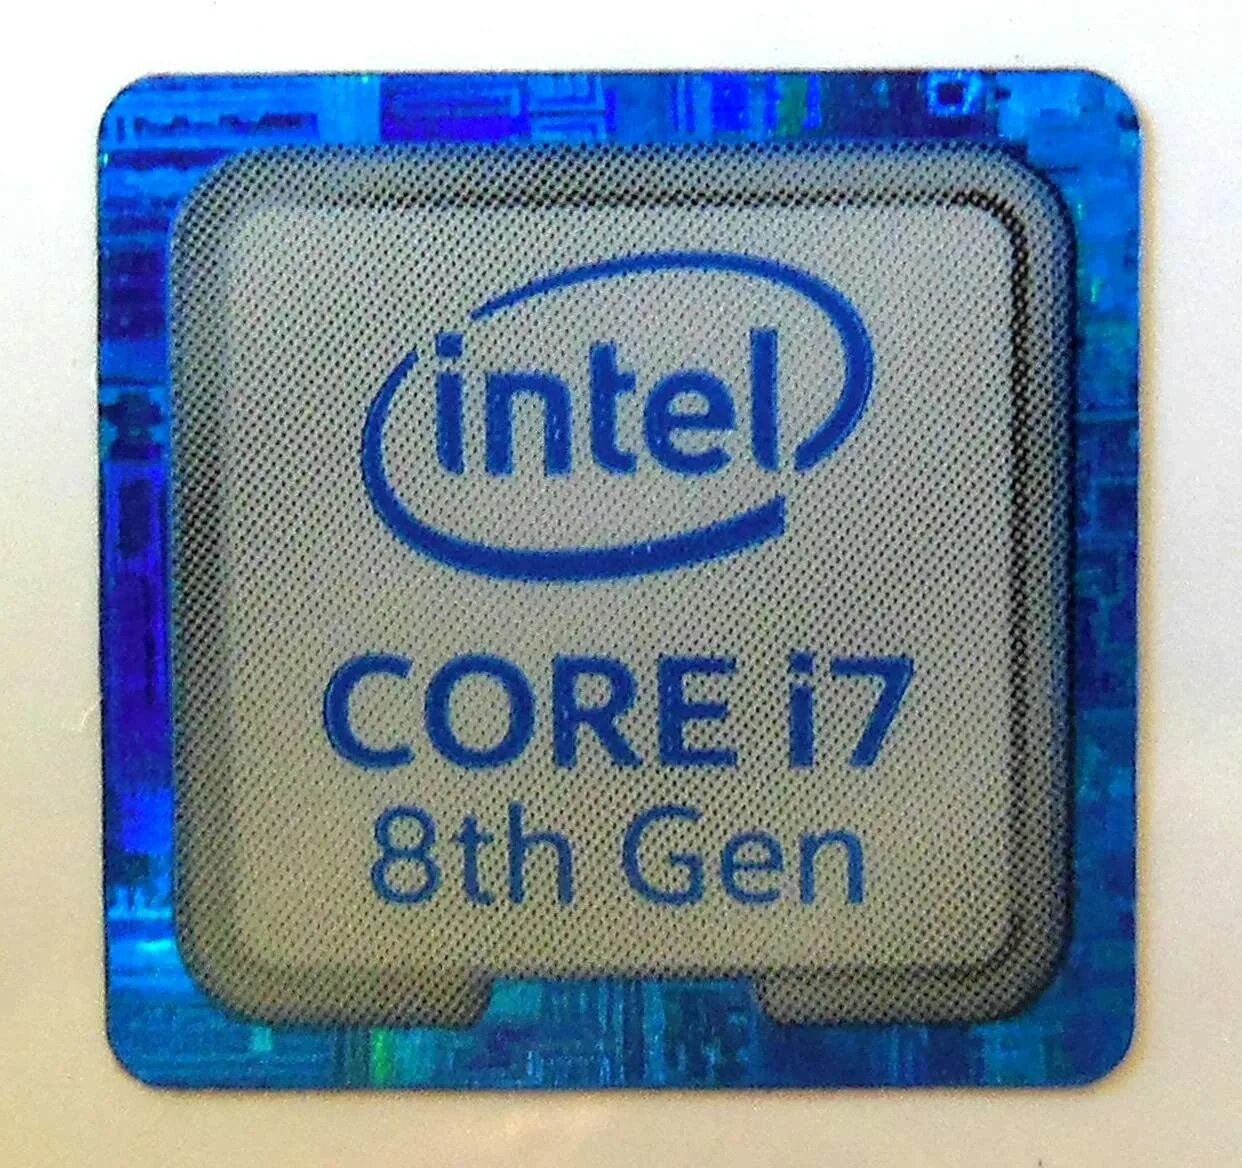 Core i8